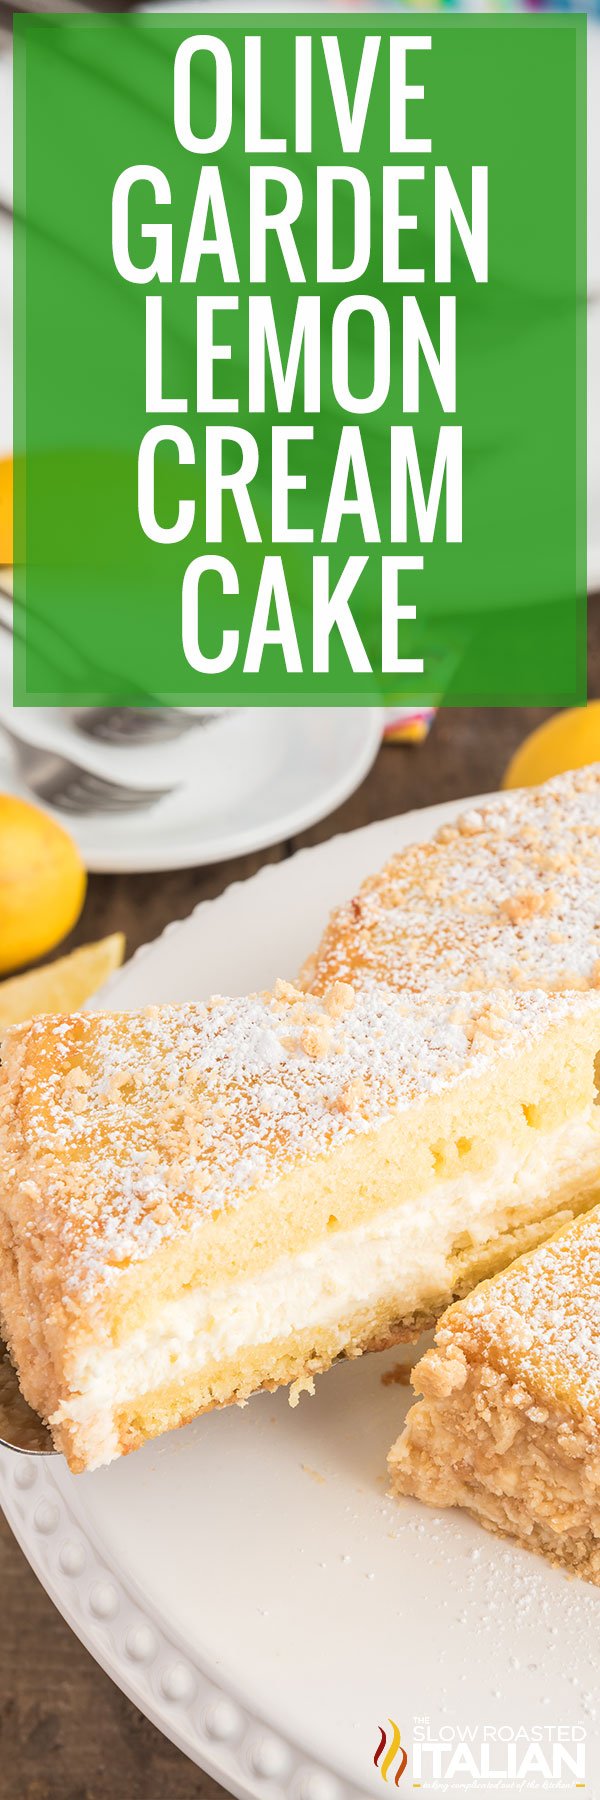 Olive Garden Lemon Cream Cake - PIN